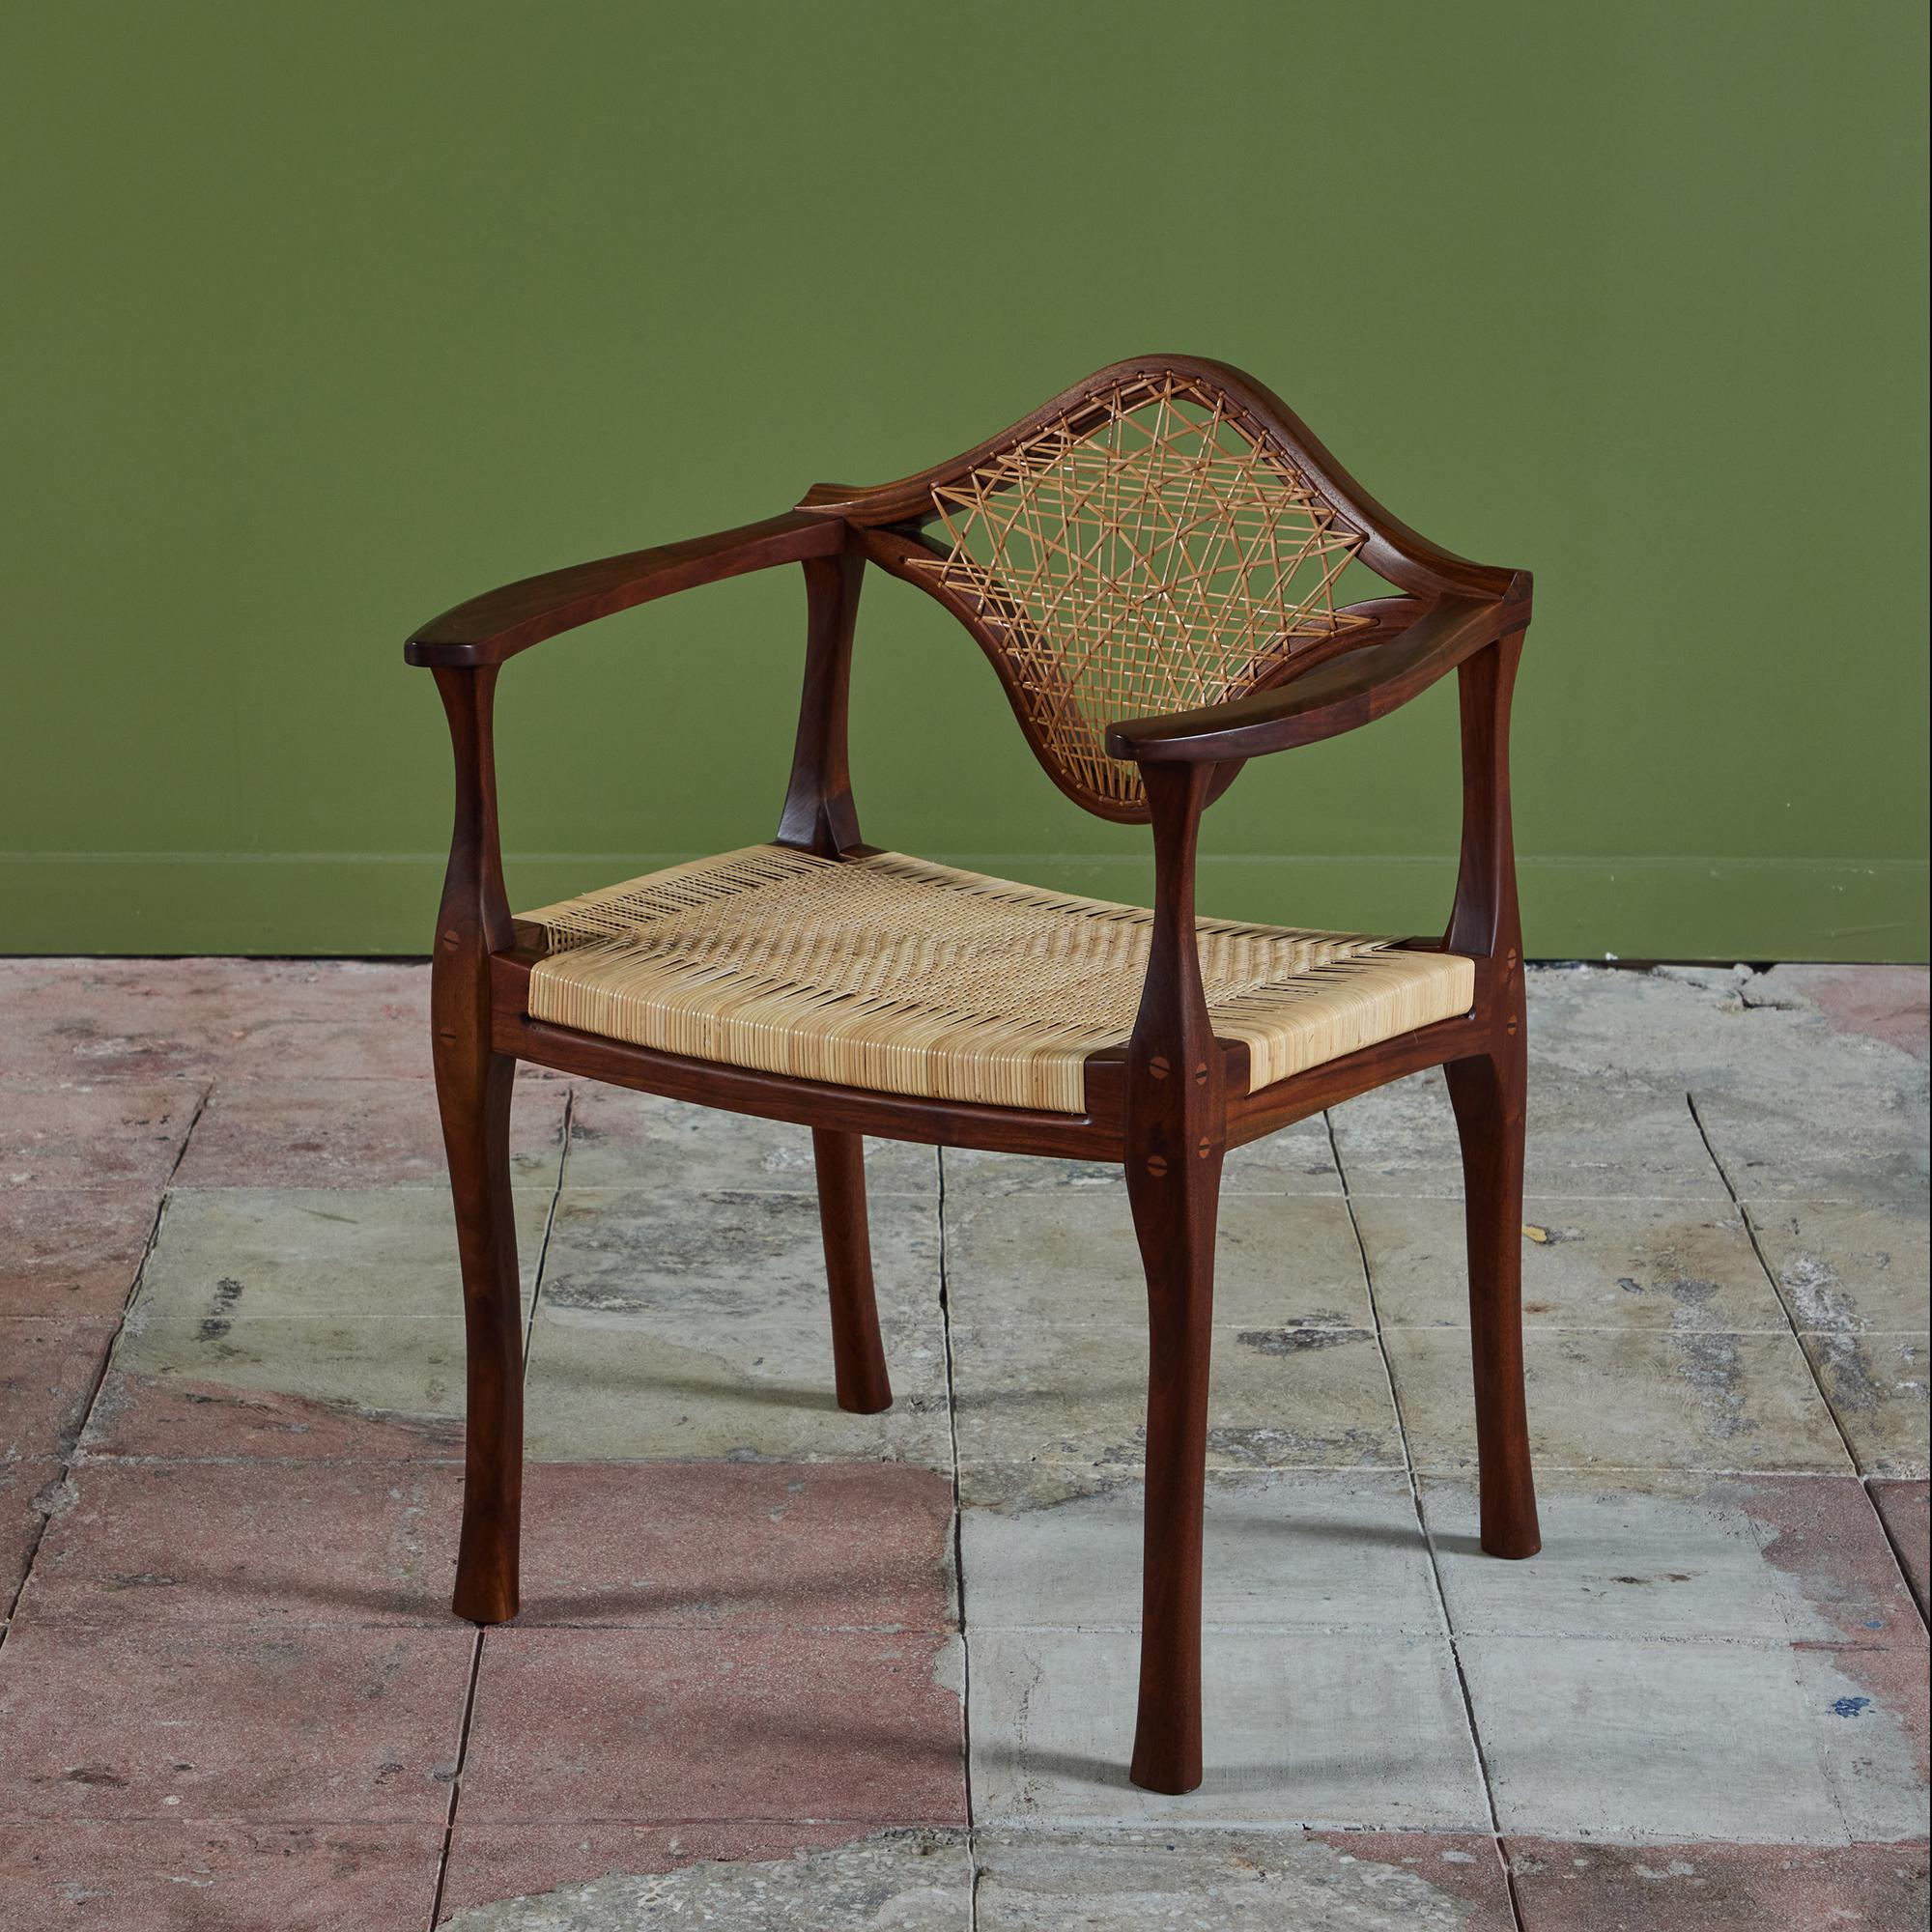 Un fauteuil en noyer de studio craft c.C. 1983 est vraiment unique en son genre. La chaise se caractérise par un cadre en bois sculpté, des courbes douces et des pieds en cascade. Le dossier présente le cannage original tressé de façon unique,